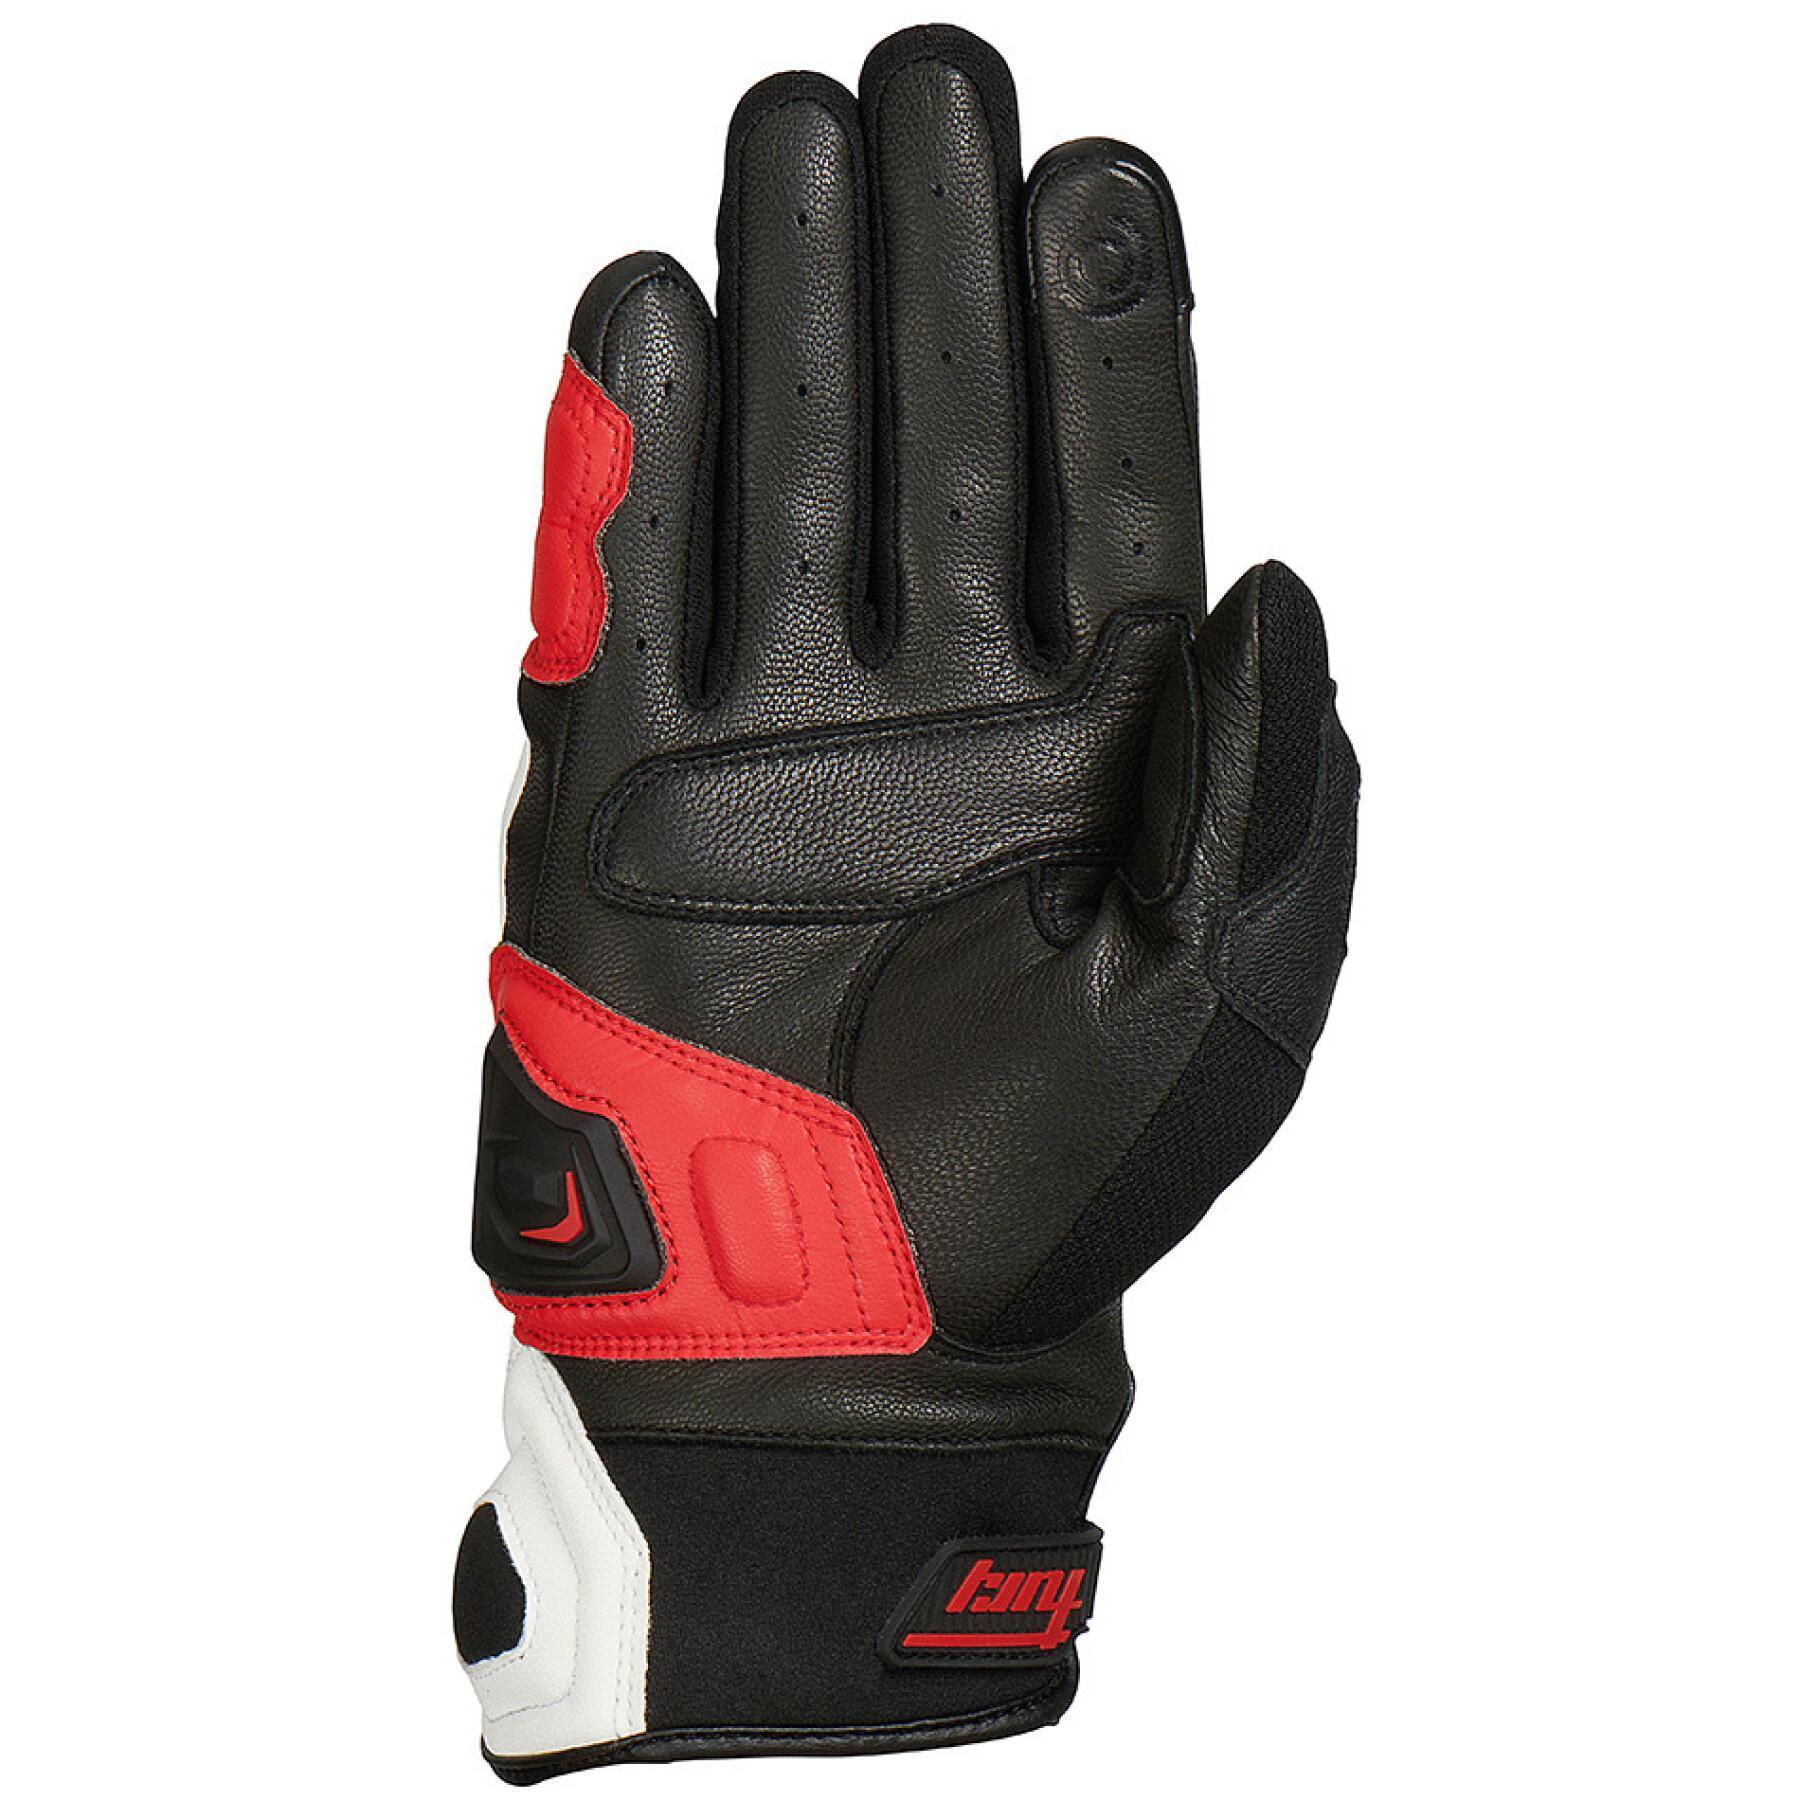 Motorcycle racing gloves Furygan Waco evo